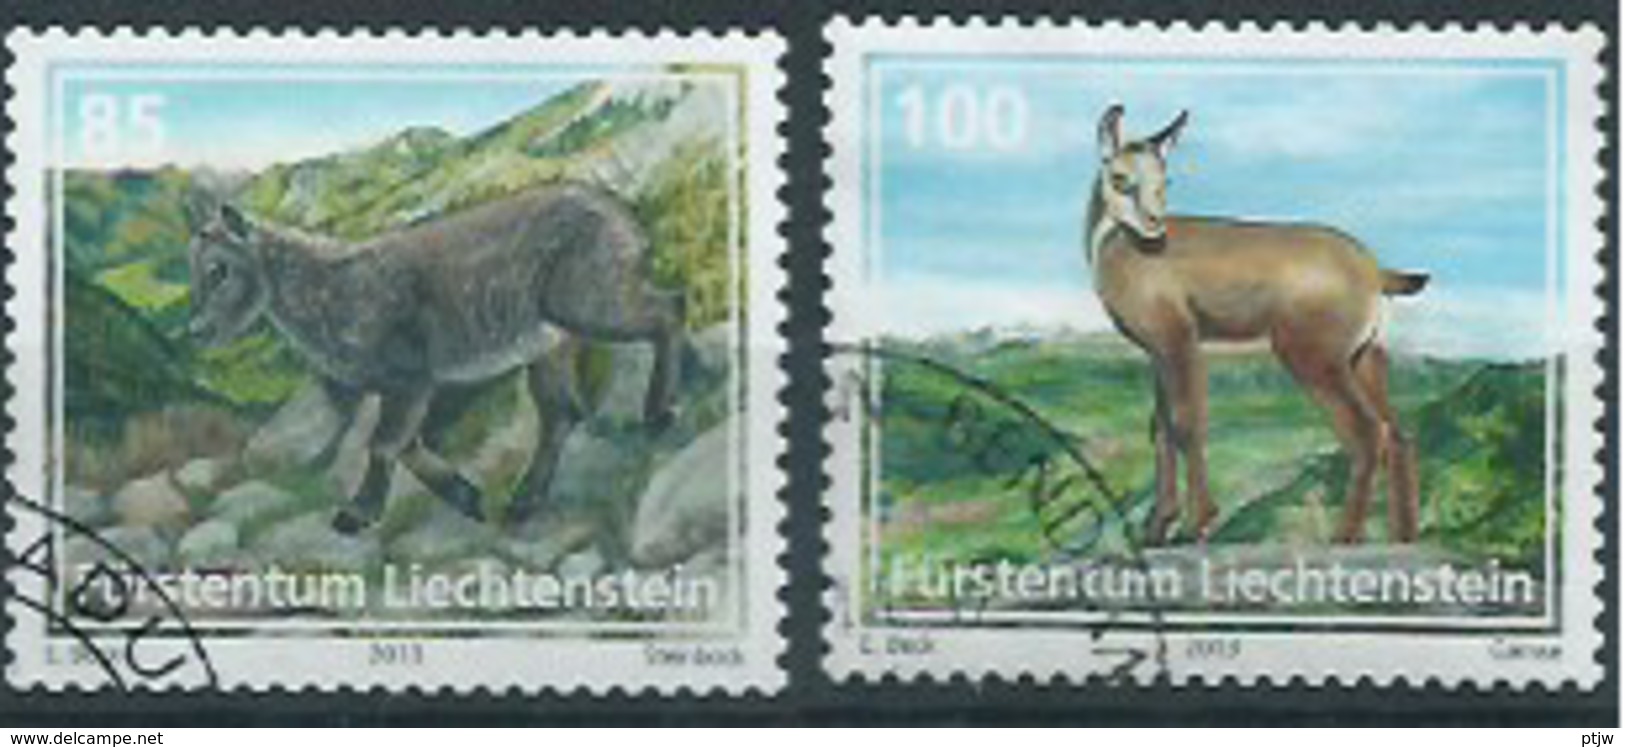 Stamp Of Liechtenstein 2013: Animals 0.85 + 1.00 Used - Nature - Animaux - Oblitere - Oblitérés